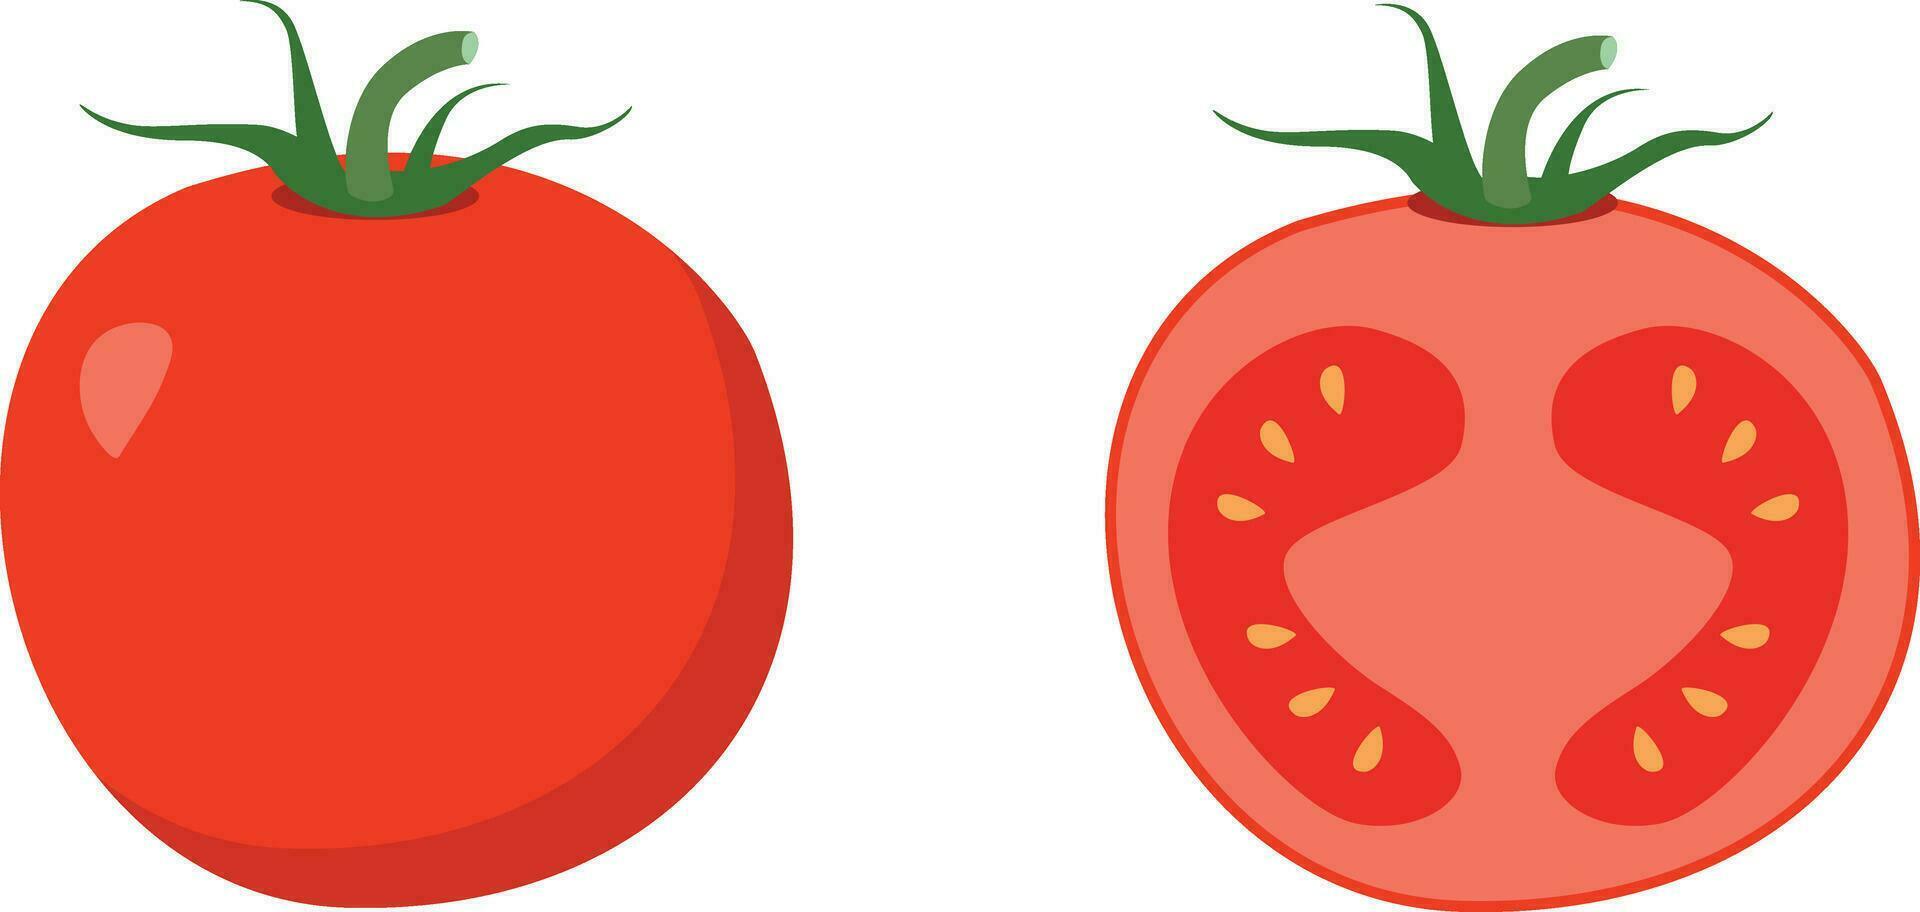 tomate rebanada aislado en blanco. tomate bio comida ilustración de sano vegetales. vector